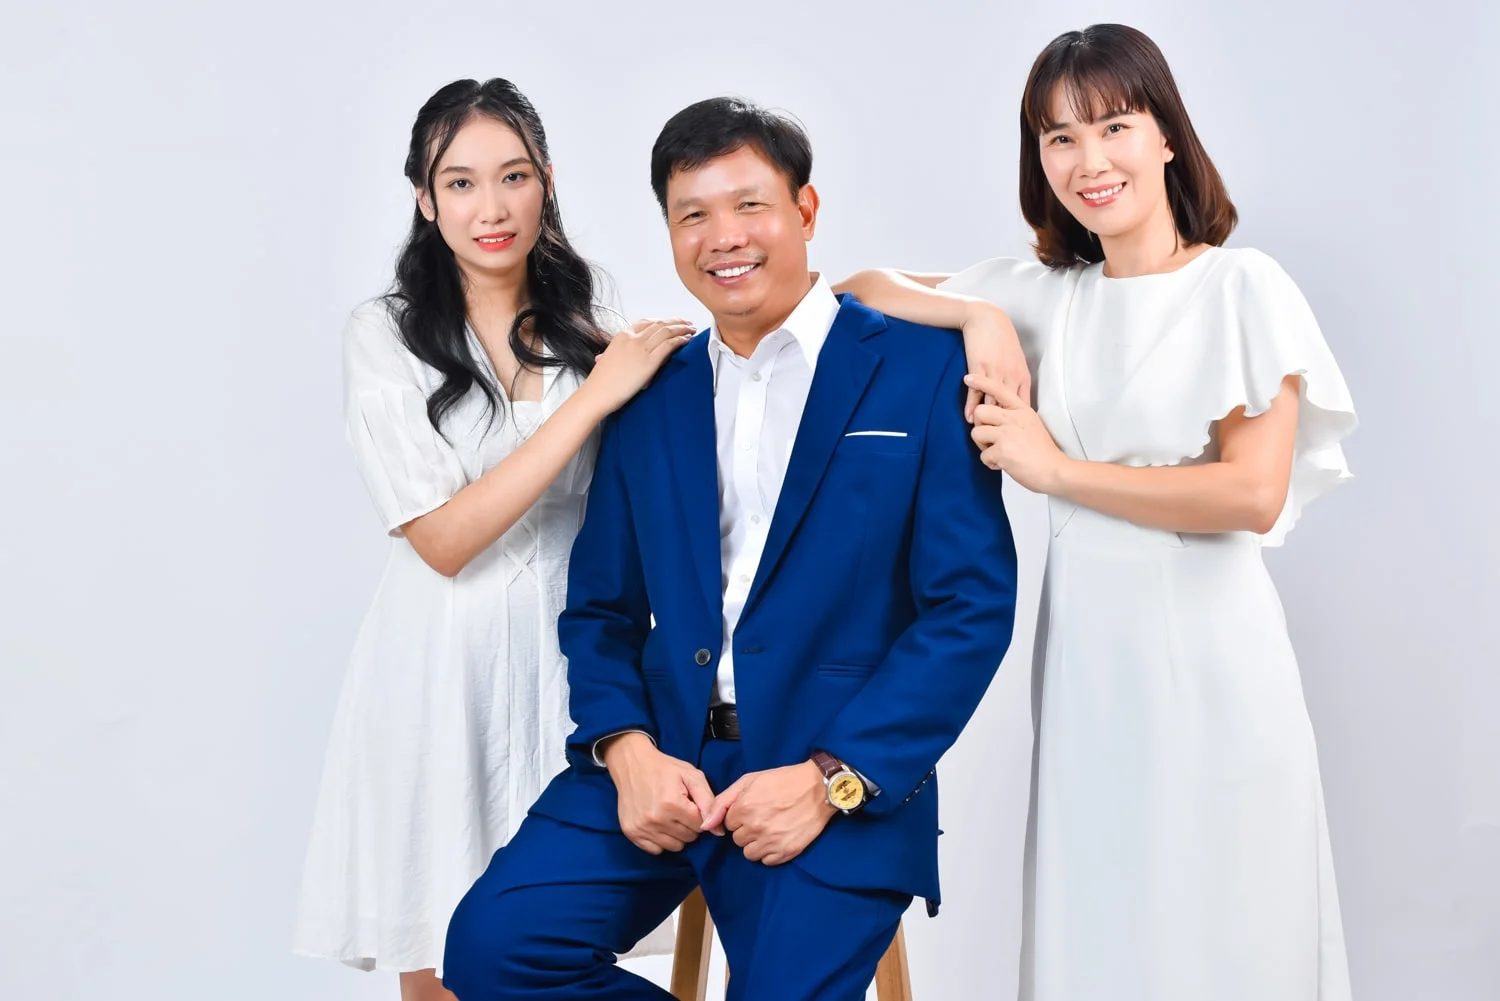 Anh gia dinh 5 nguoi 6 min - 35 cách tạo dáng chụp ảnh gia đình 3 người đẹp nhất - HThao Studio